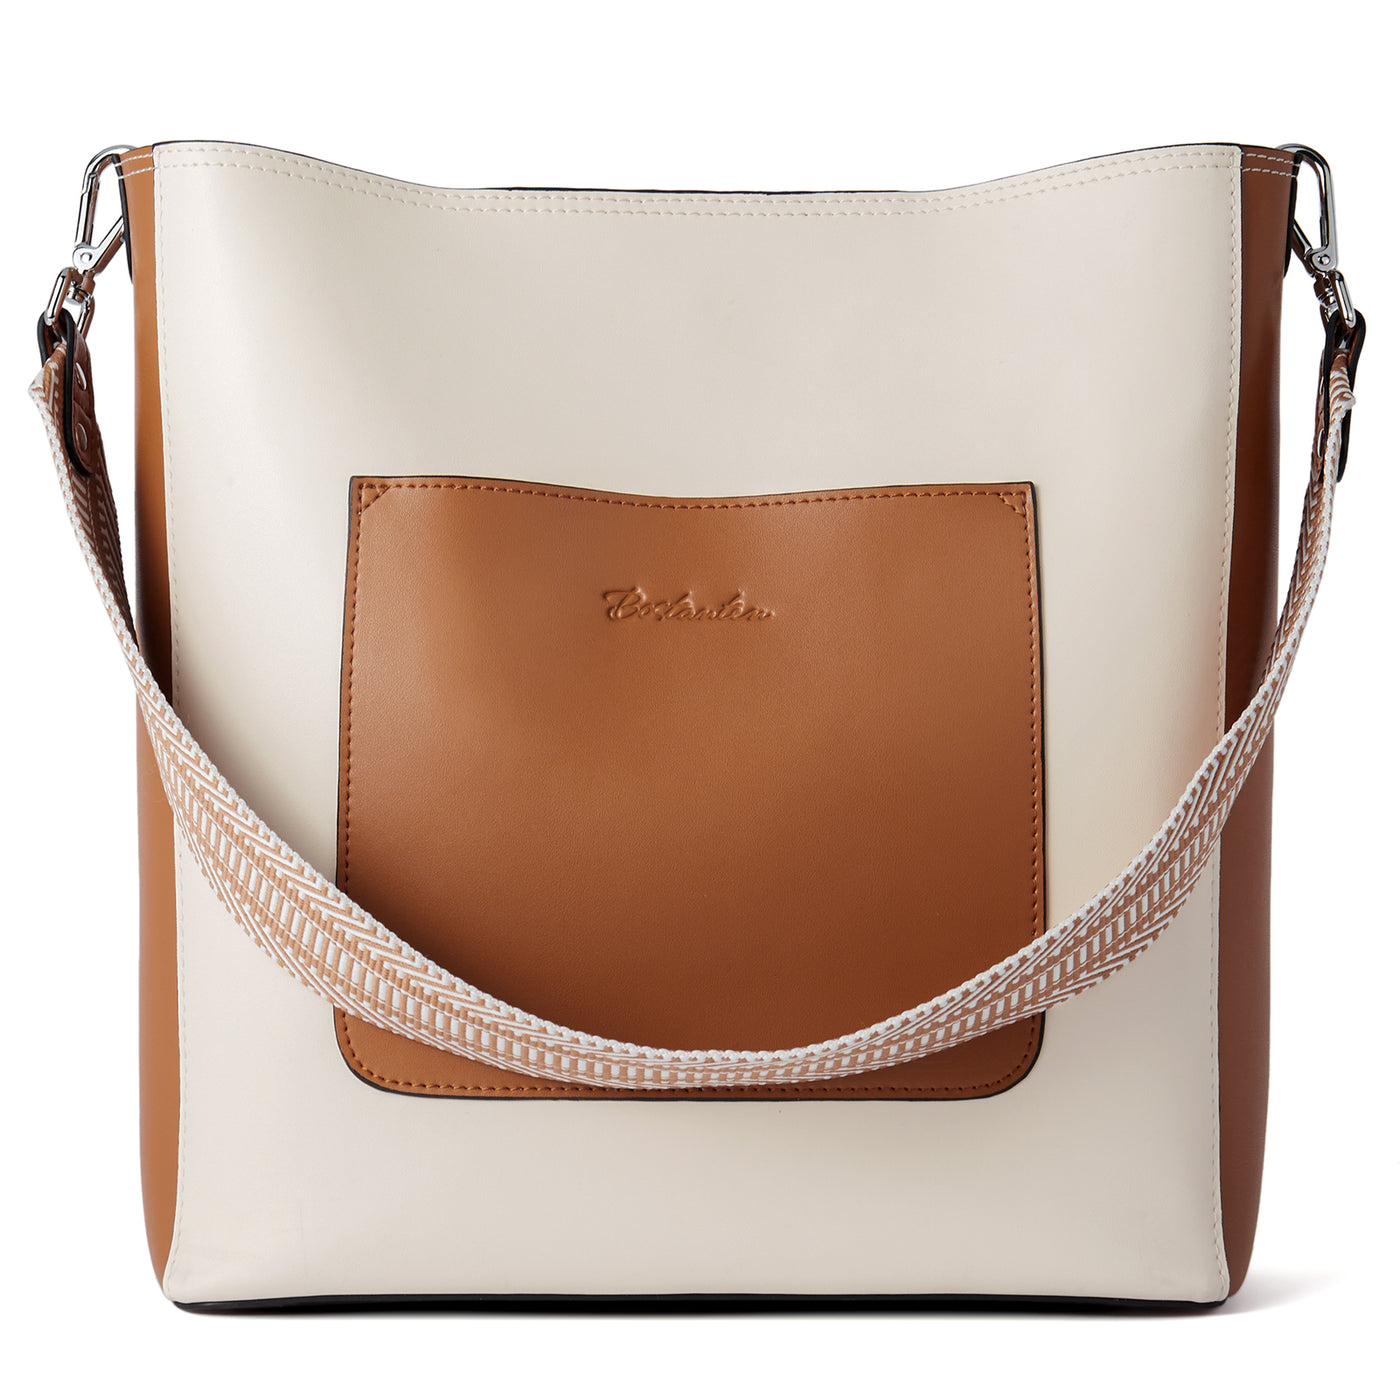 BOSTANTEN Women's Soft Leather Handbag